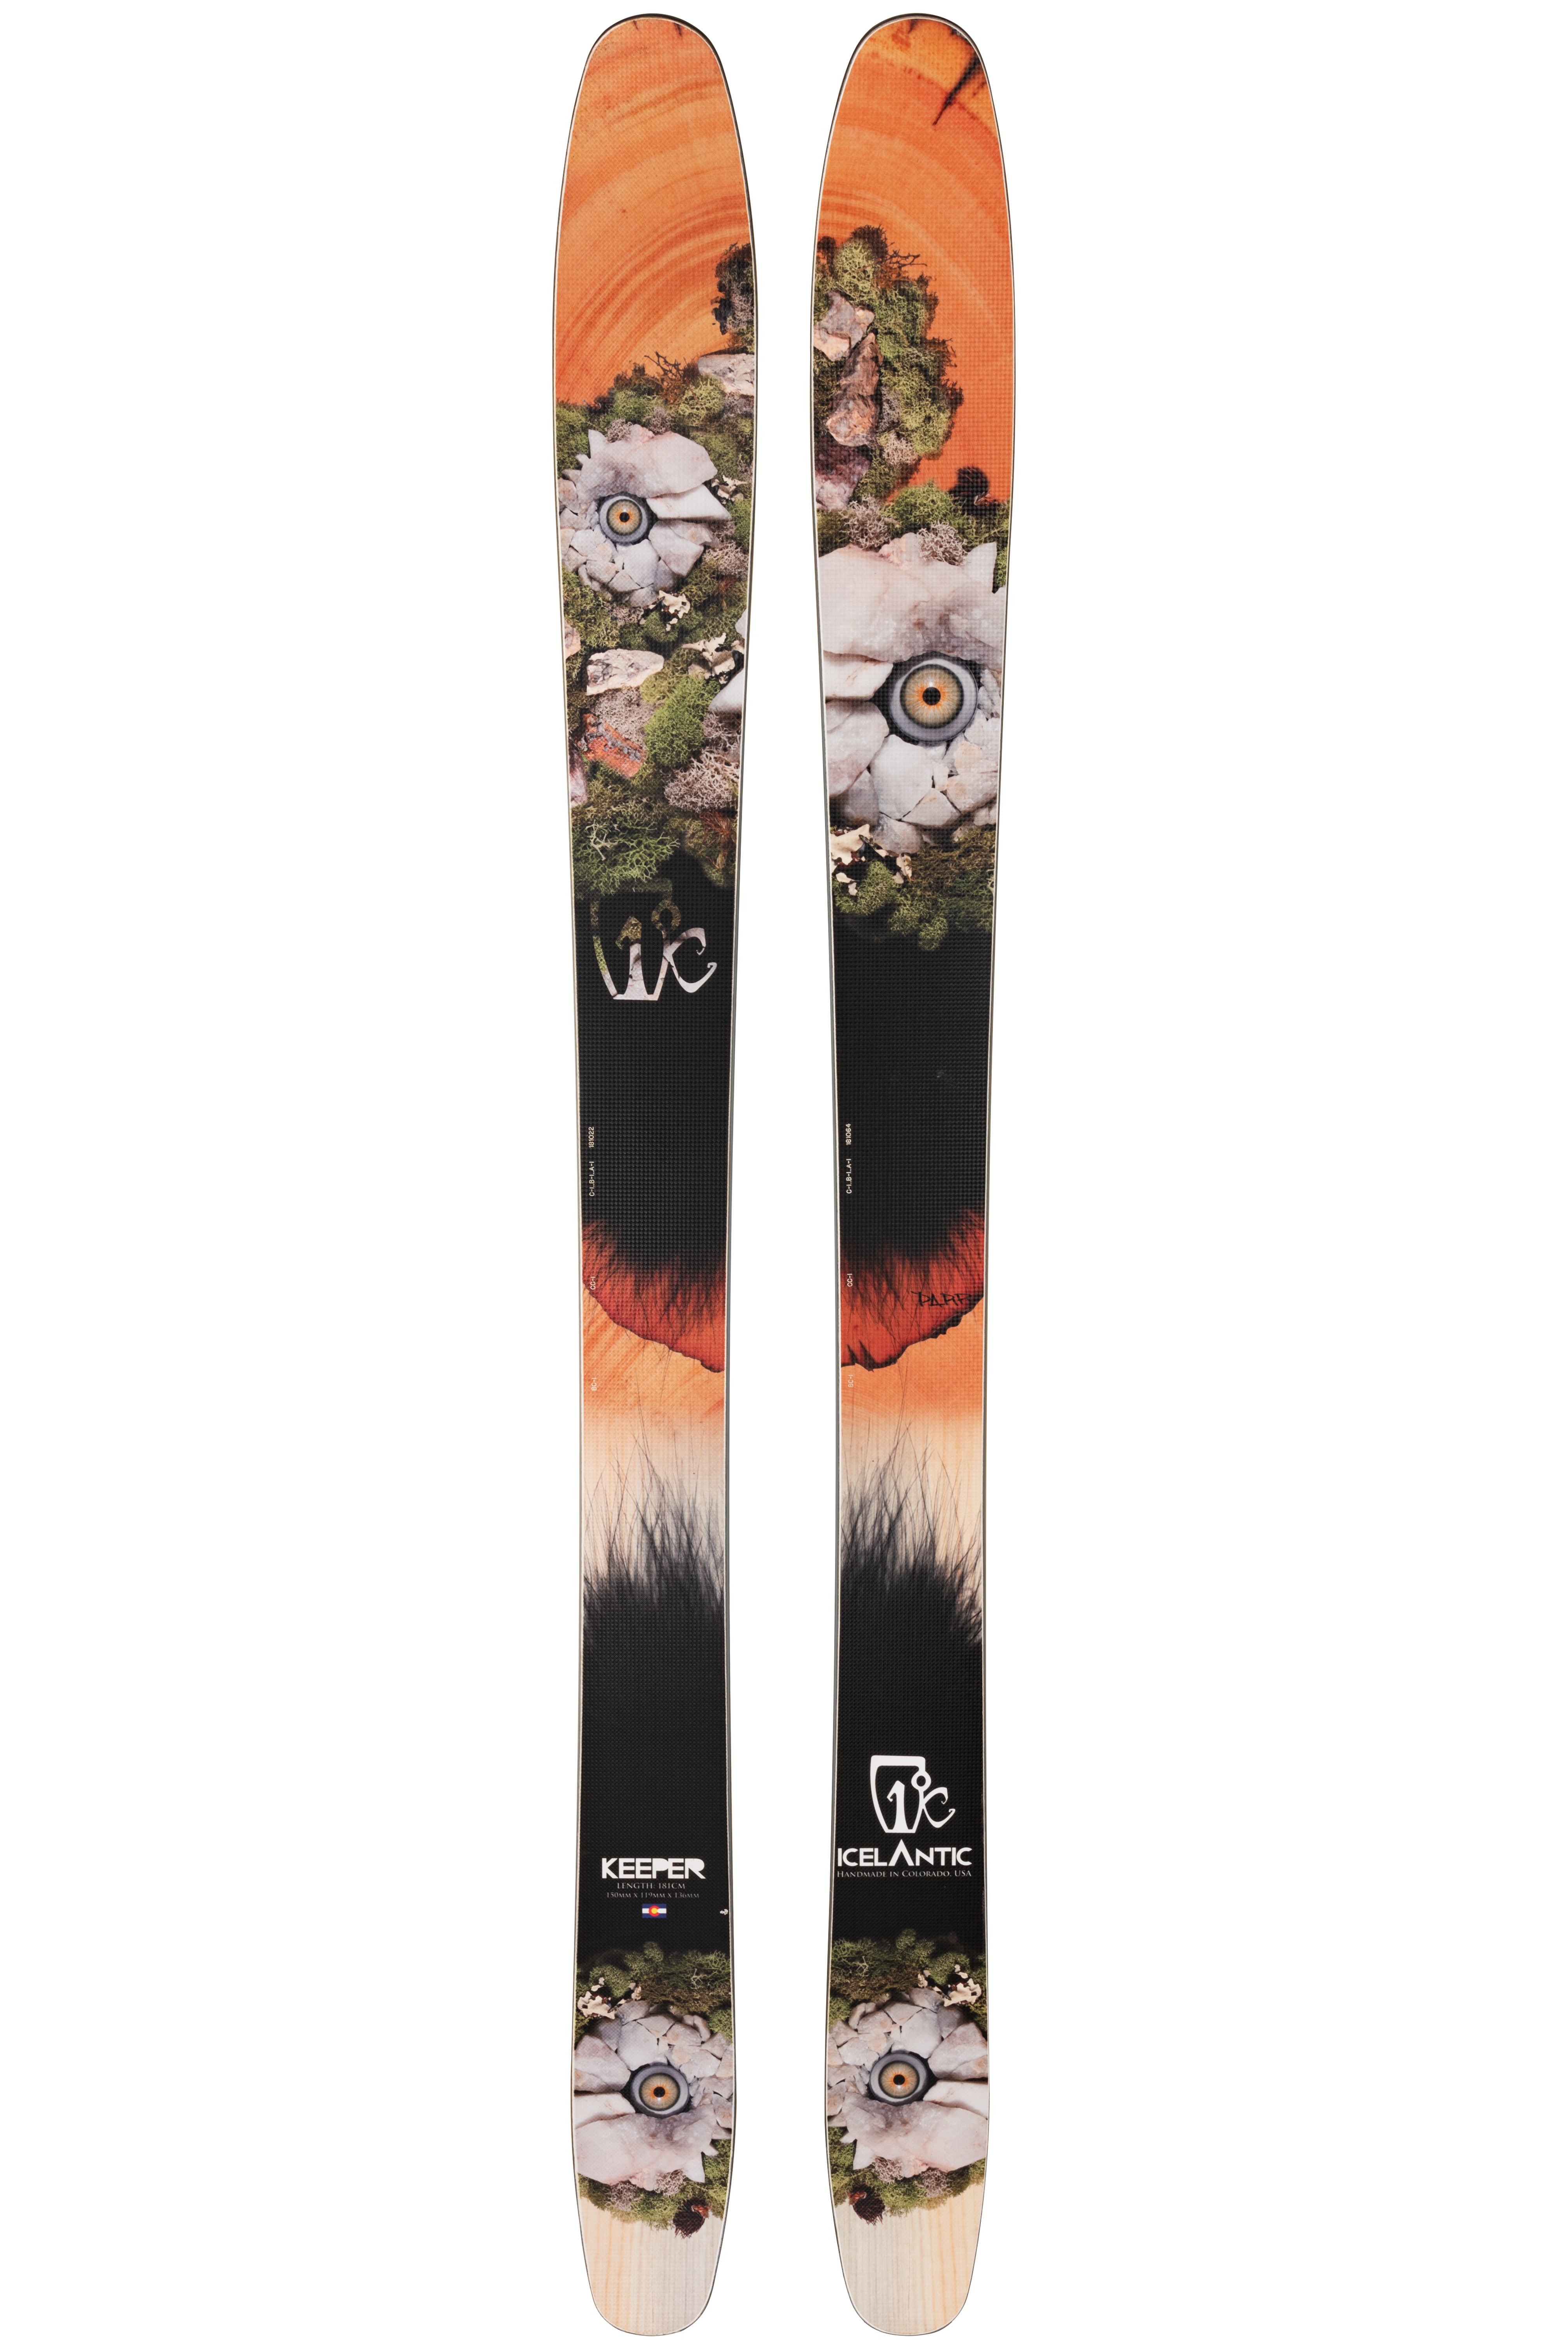 Лыжи для профессионалов Icelantic Keeper 119 2013/2014 181cm